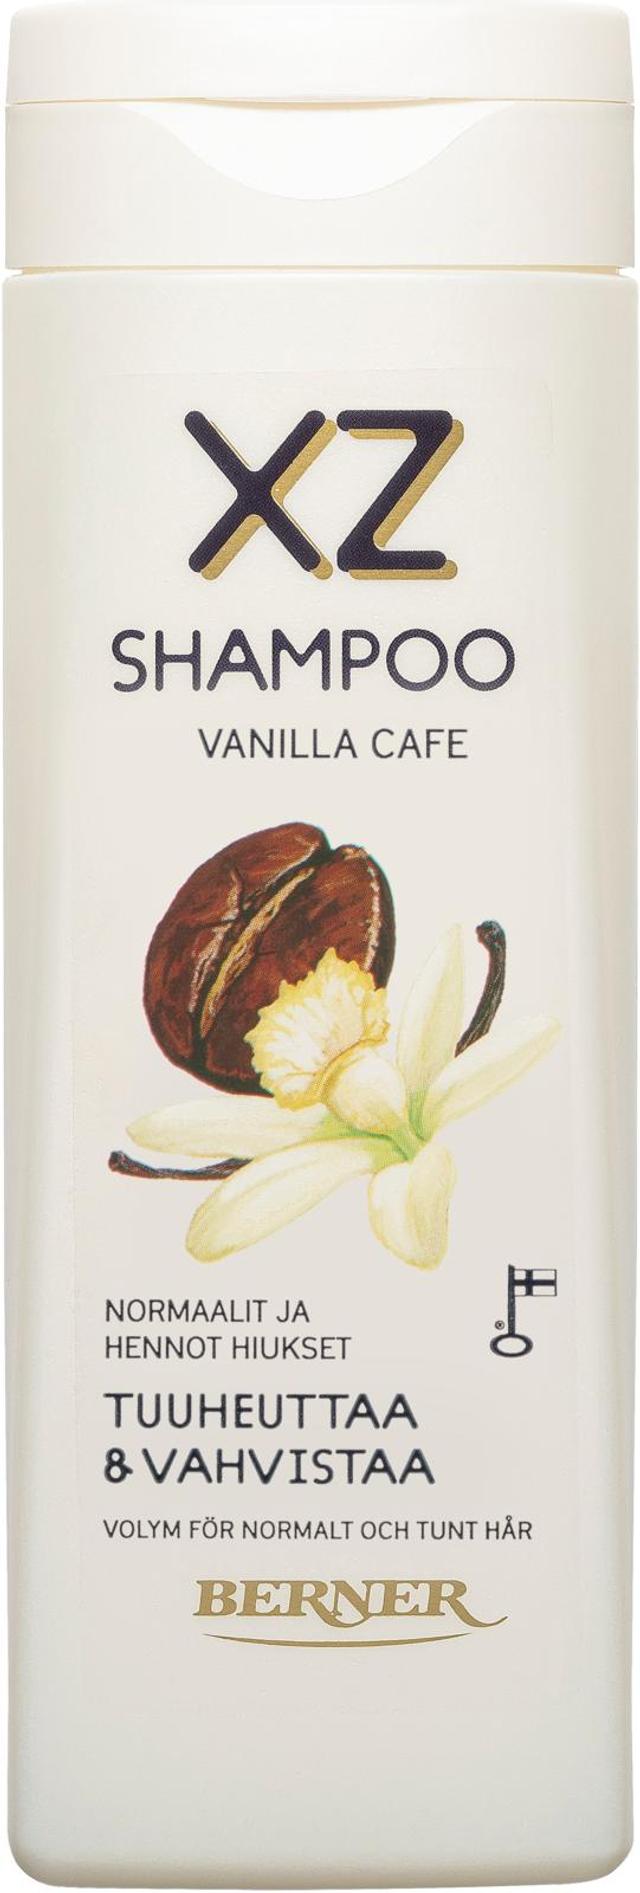 XZ 250ml Vanilla cafe shampoo